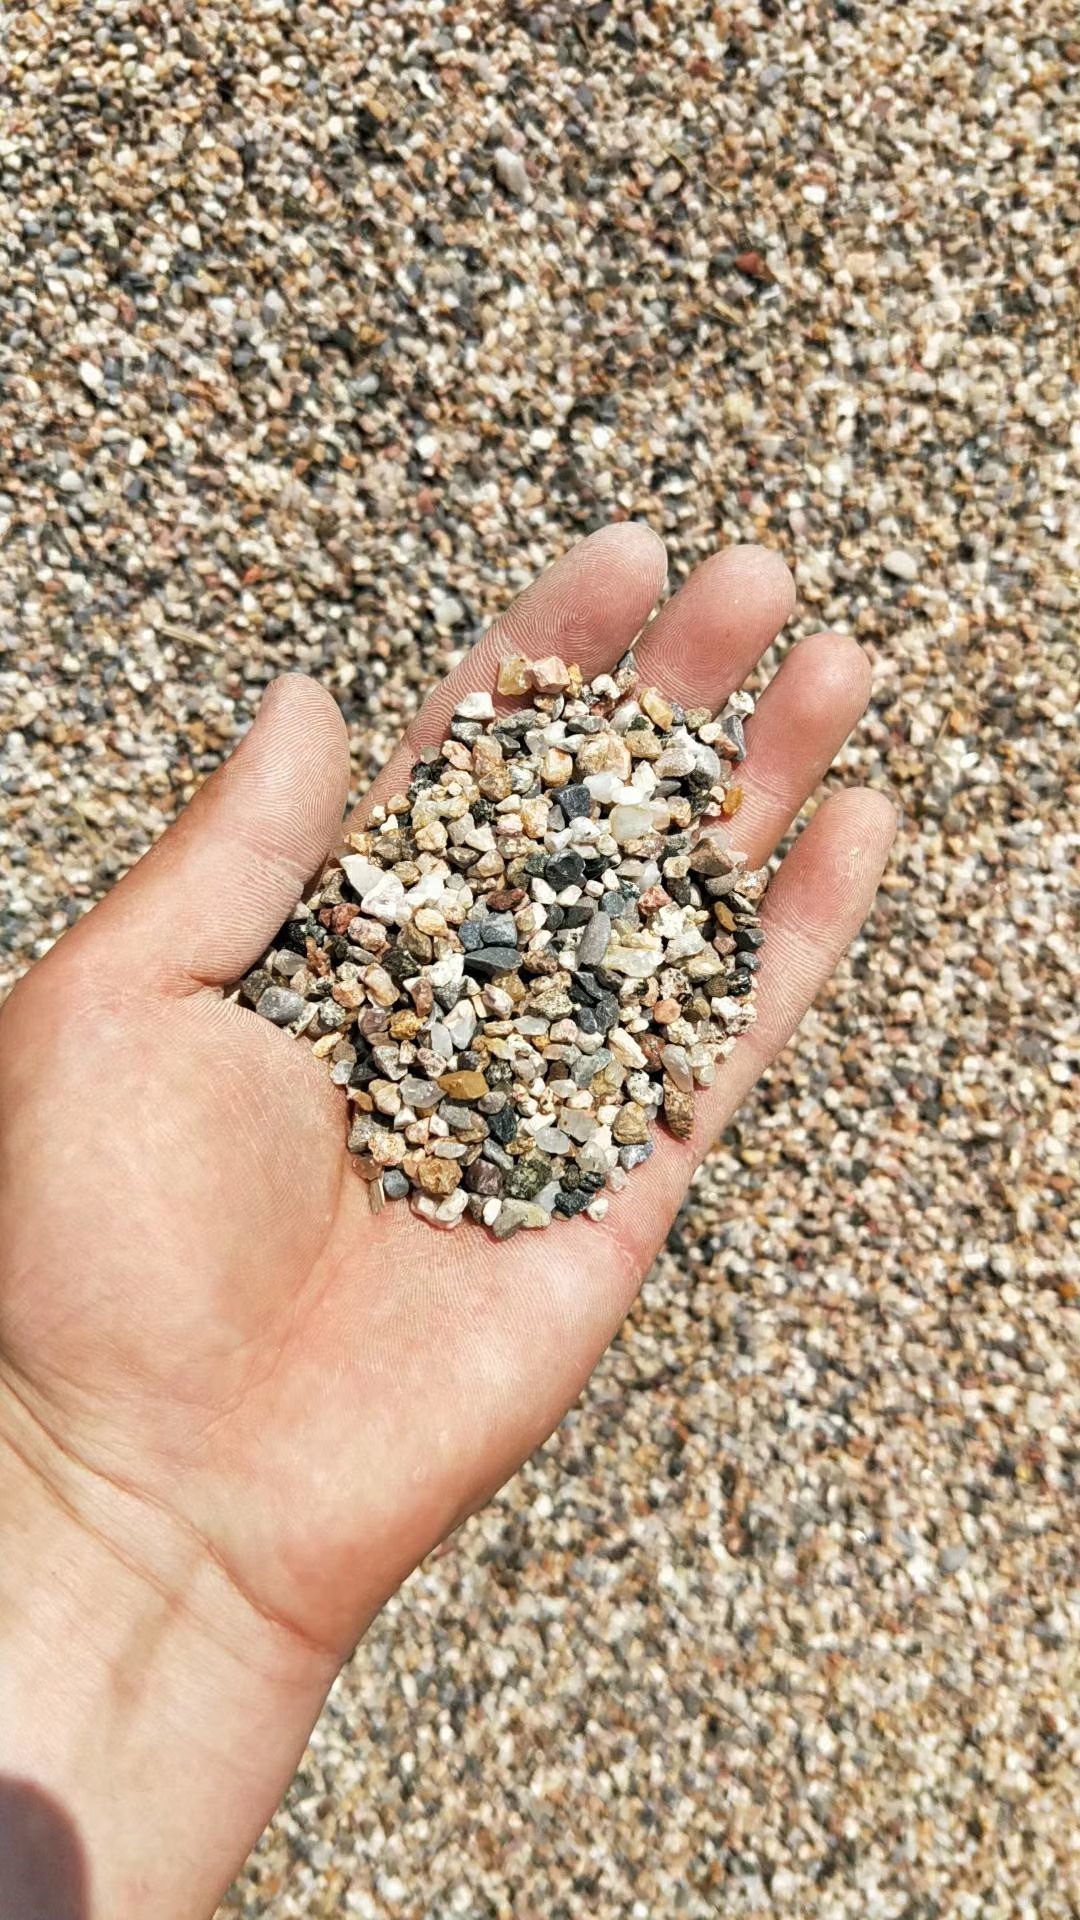 鹅卵石哪里鹅 大卵石海浪石开采基地 鹅卵石多少钱一吨 鹅卵石哪里有卖 临沂哪里有鹅卵石 临沂哪里有鹅卵石的